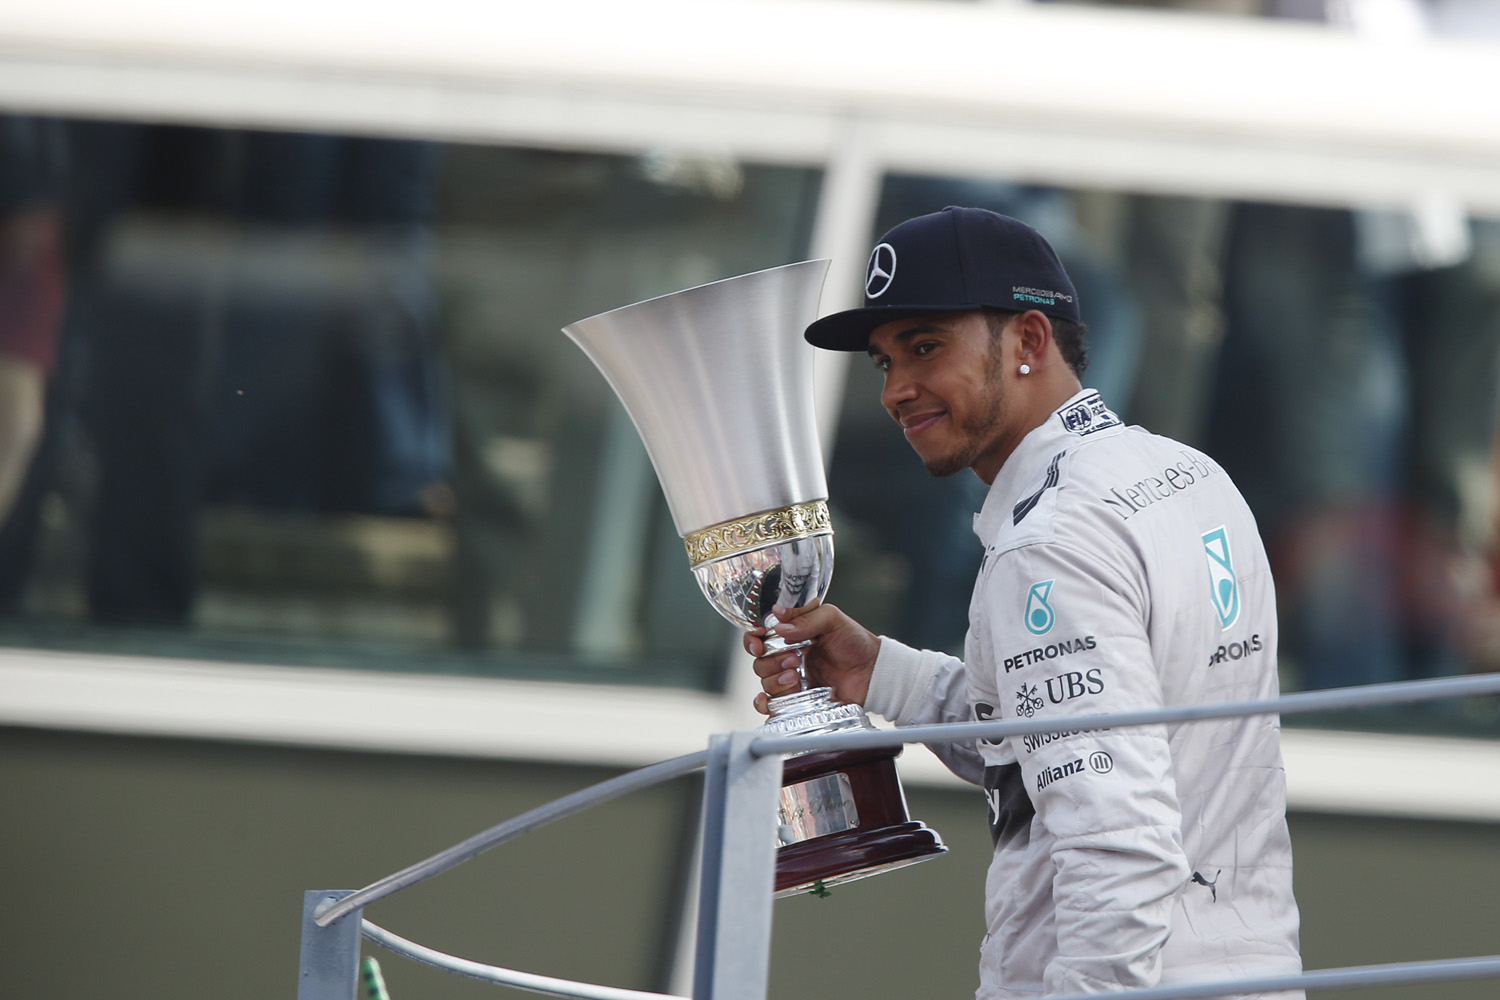 Formule 1 - GP d'Italie 2014, vainqueur Lewis Hamilton